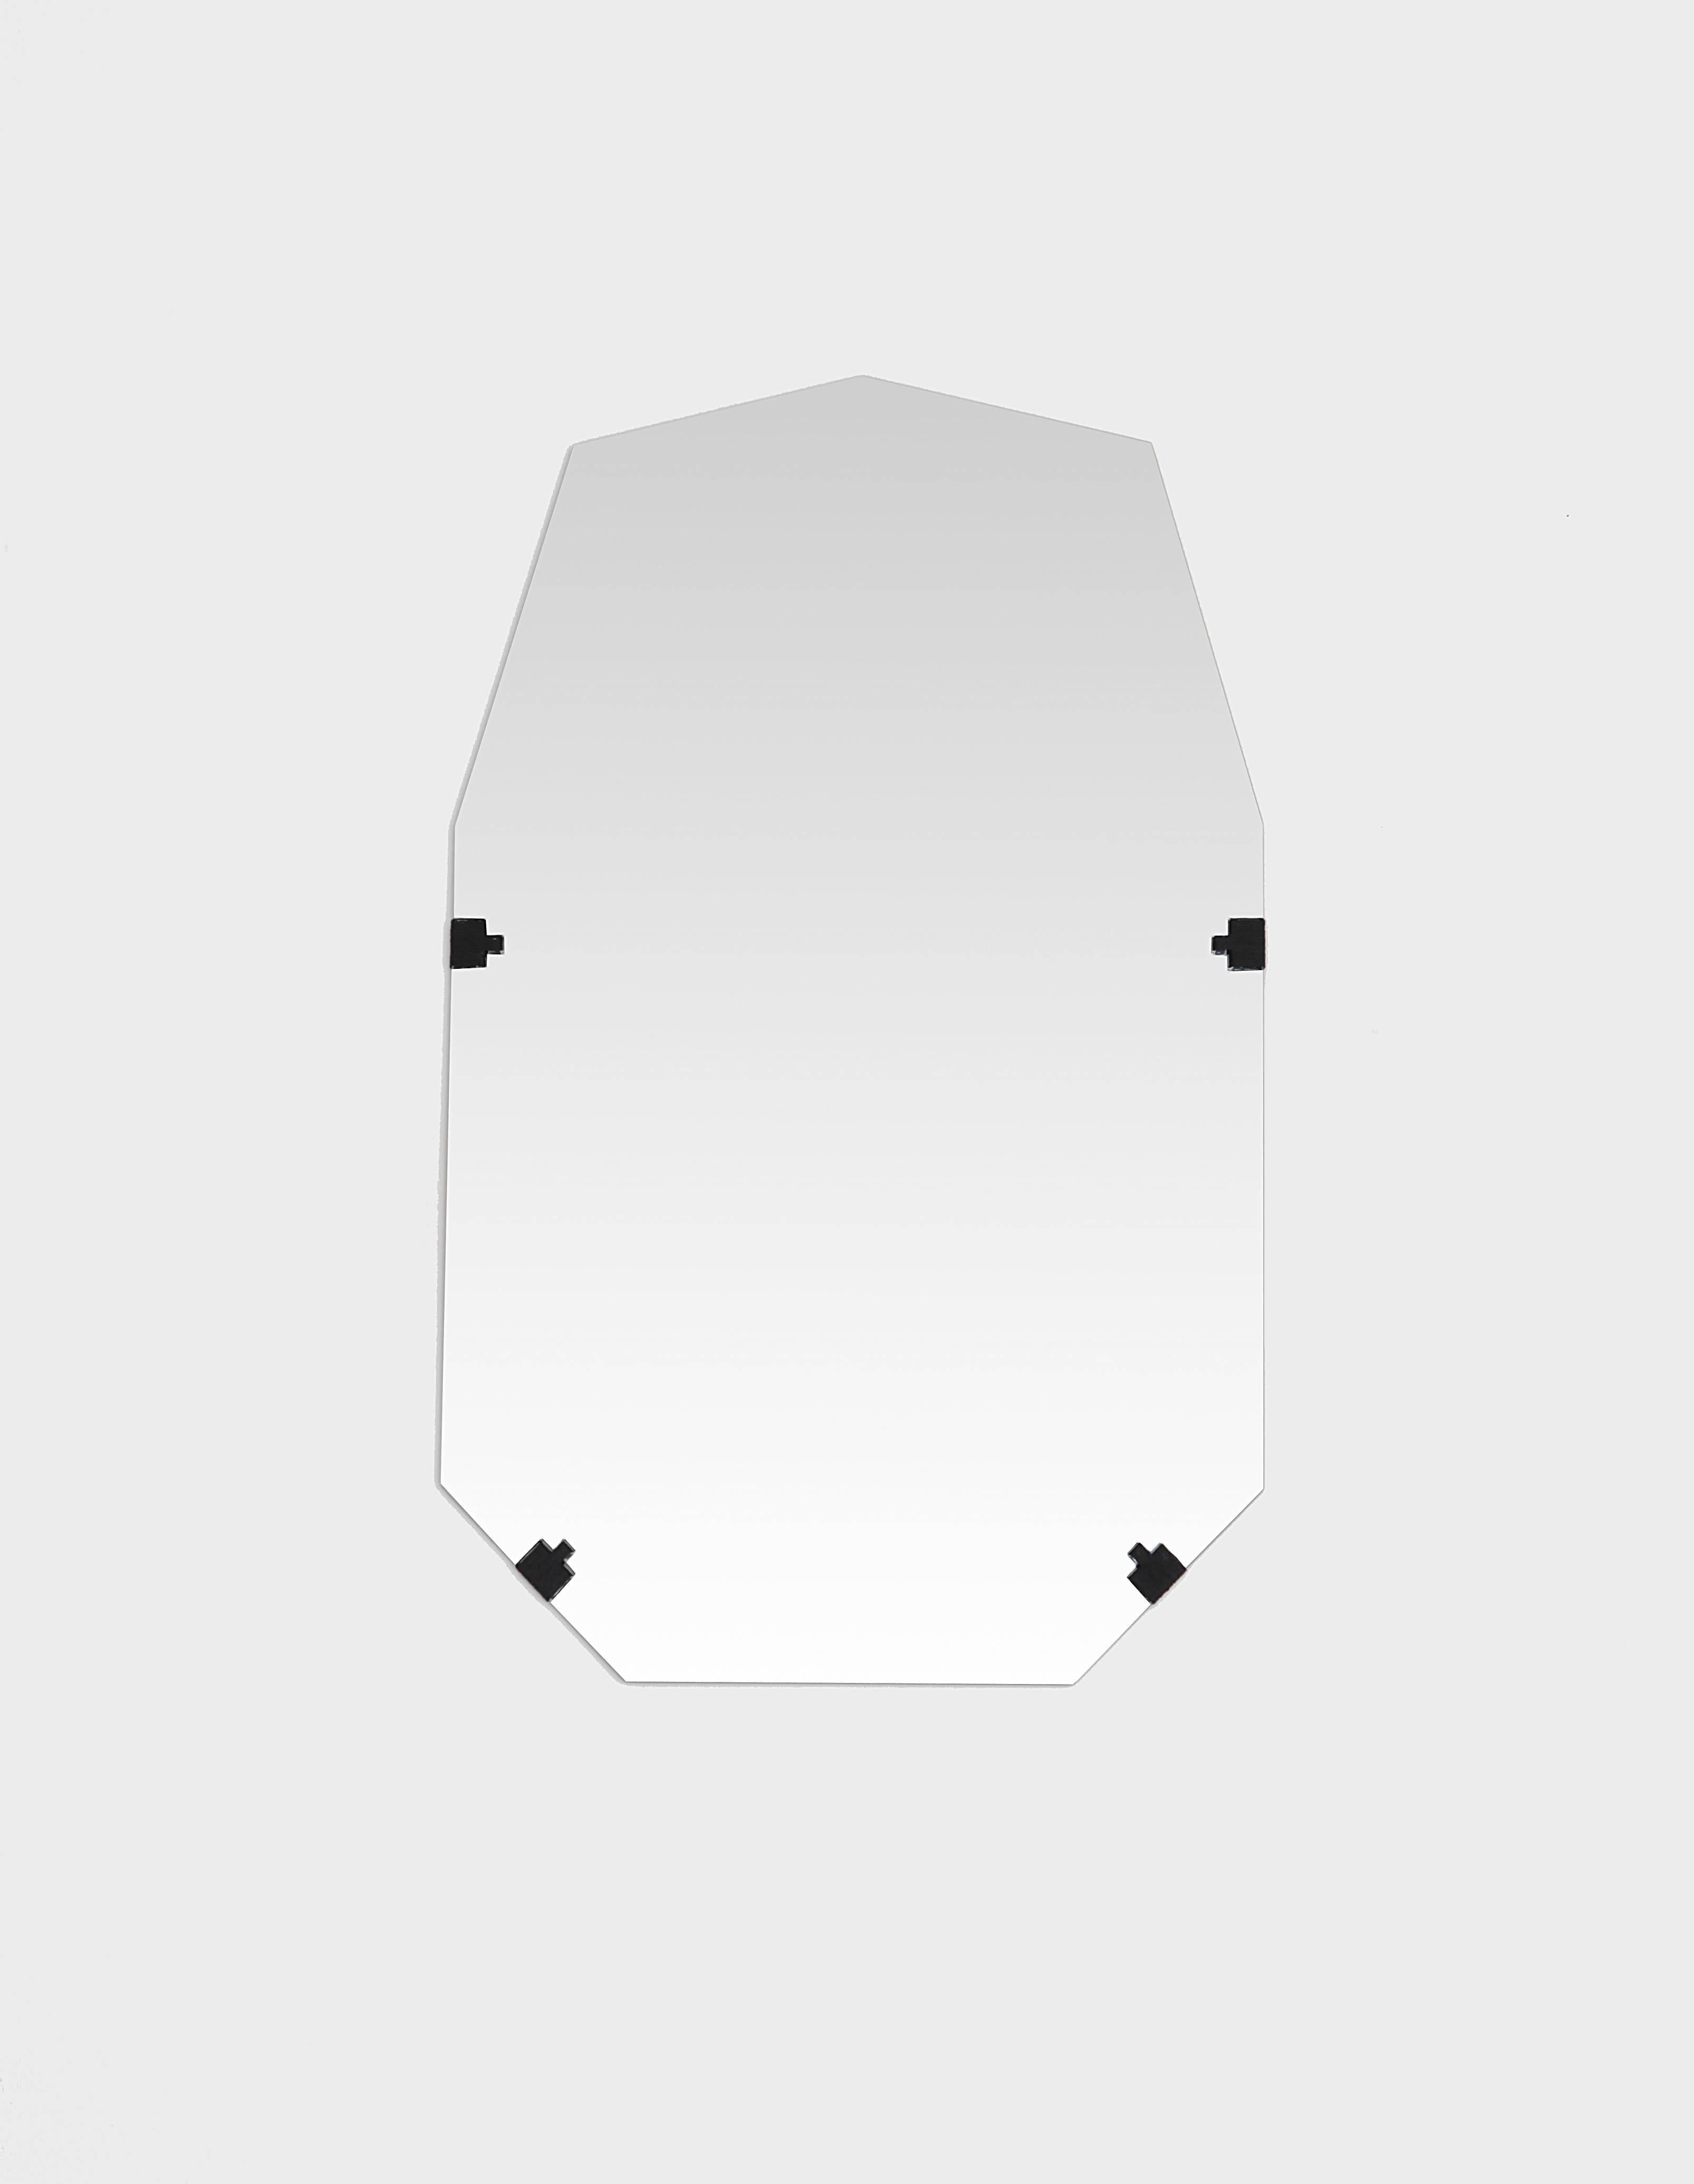 Der wasserstrahlgeschnittene Spiegel ist mit Hanfschnur auf die Rückseite genäht. Hergestellt auf Bestellung, so dass die Hanffarben vollständig angepasst werden können. Erhältlich in runder und länglicher nicht-eckiger Form.

Abmessungen:
Höhe: